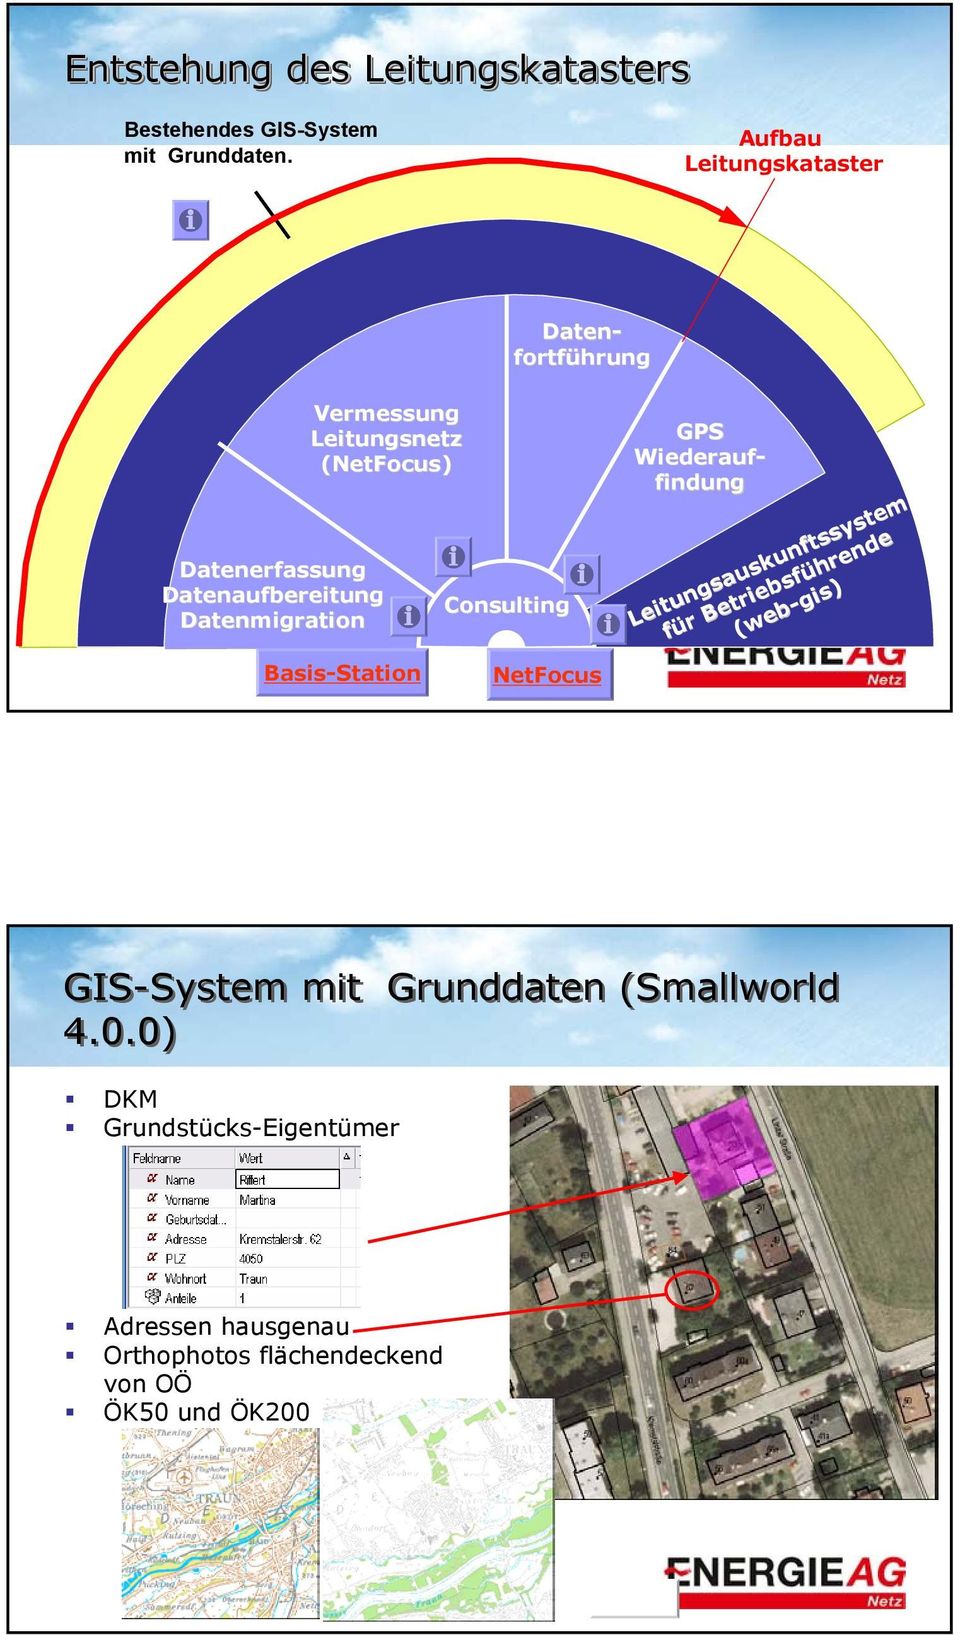 Consulting Daten- fortführung GPS Wiederauf- findung Leitungsauskunftssystem für r Betriebsführende (web-gis gis)